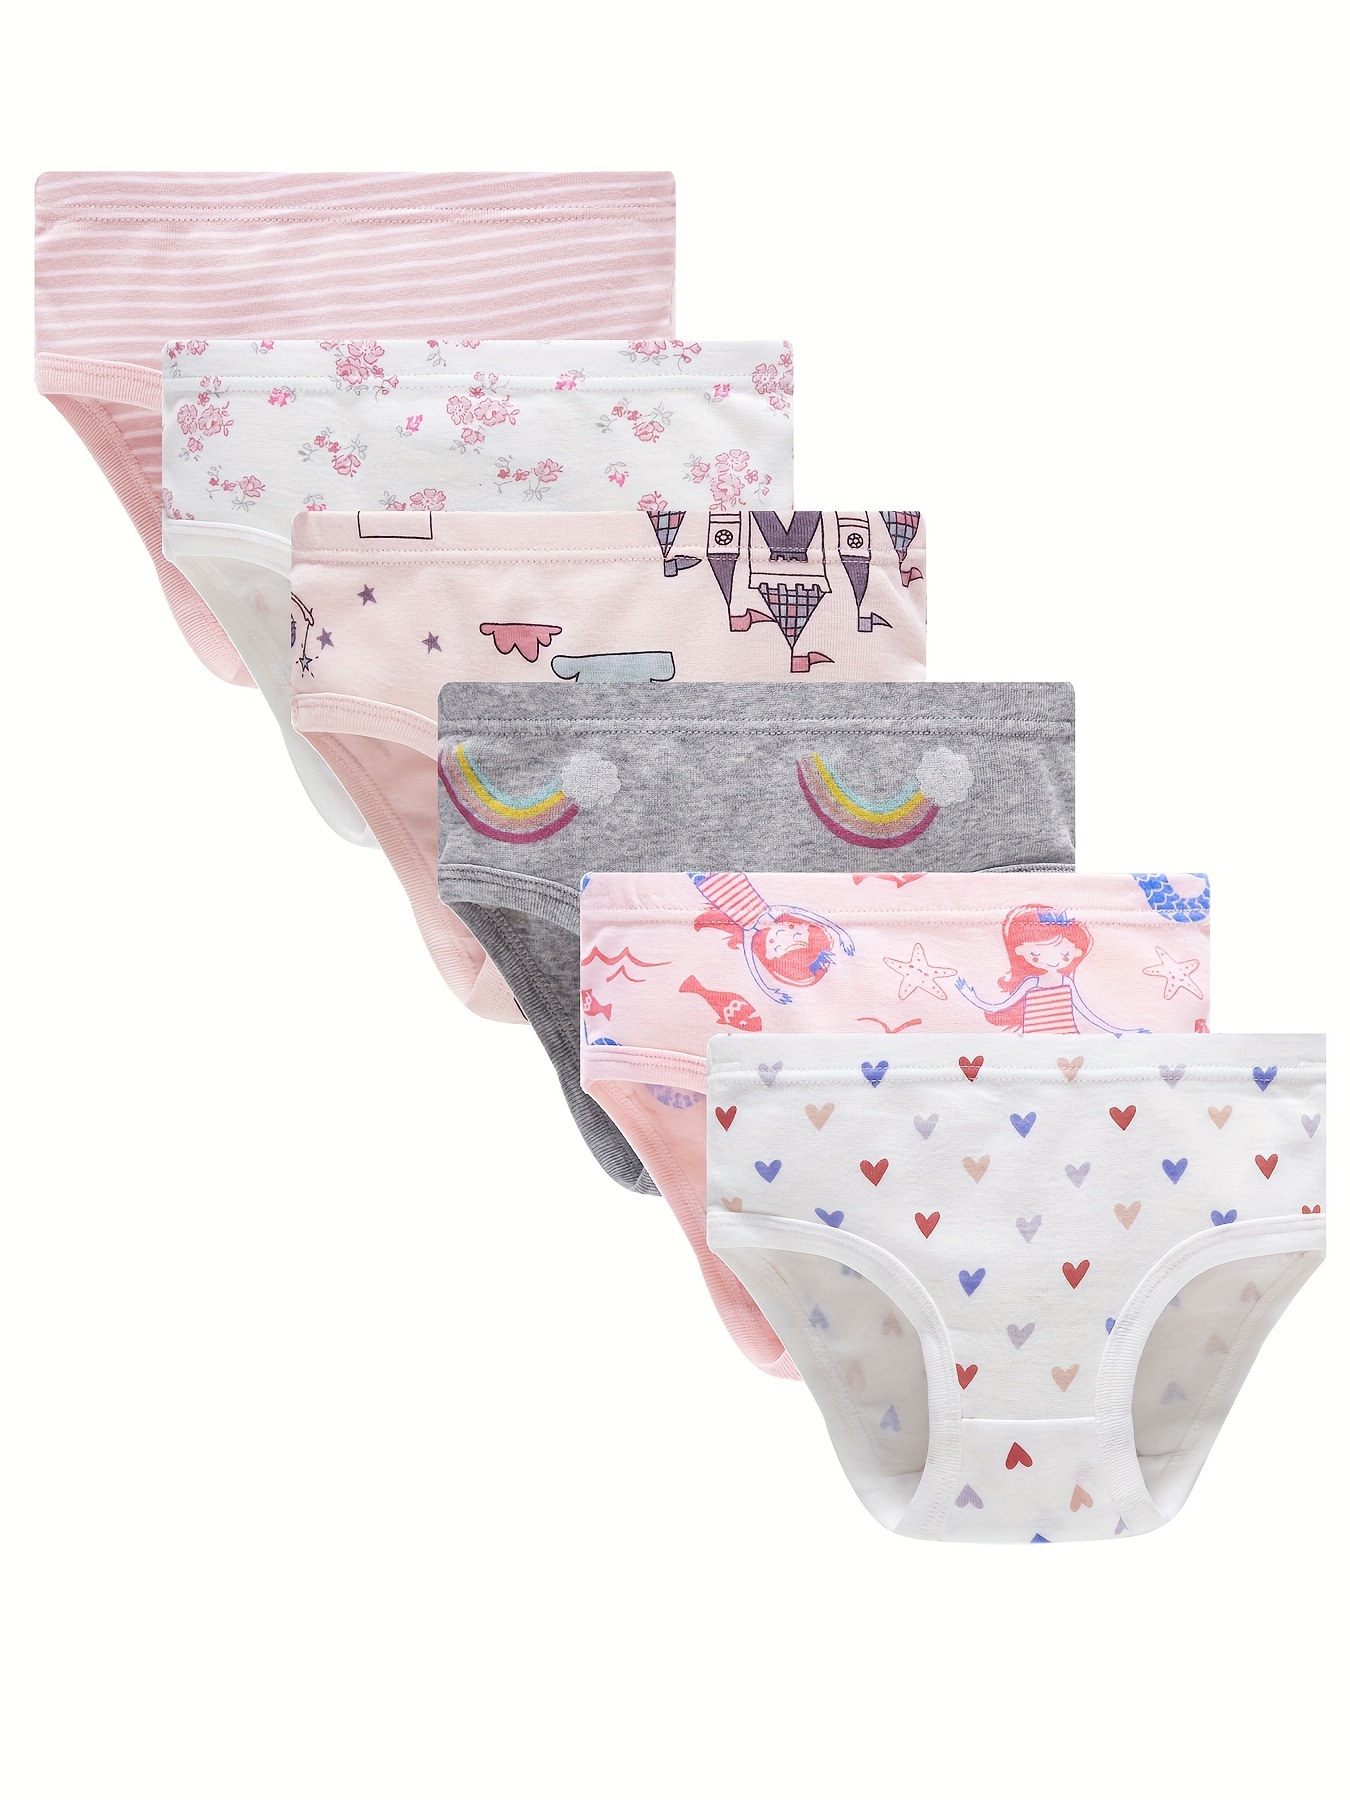 Girls' Underwear - 5 Pack Stretch Cotton Briefs Panties (6-14)